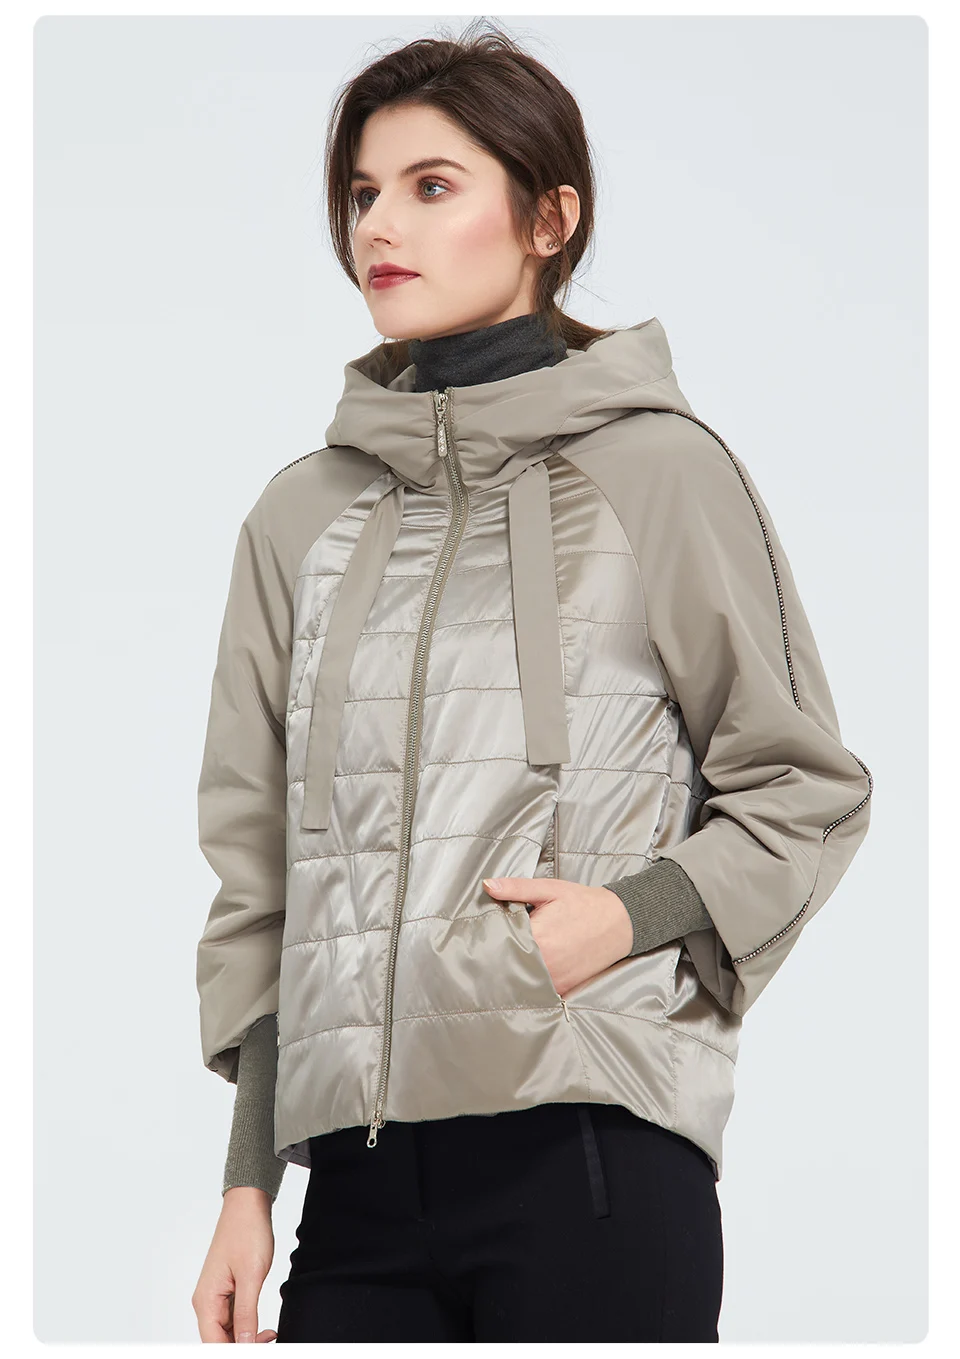 Womens Hooded Warm Sport Jacket